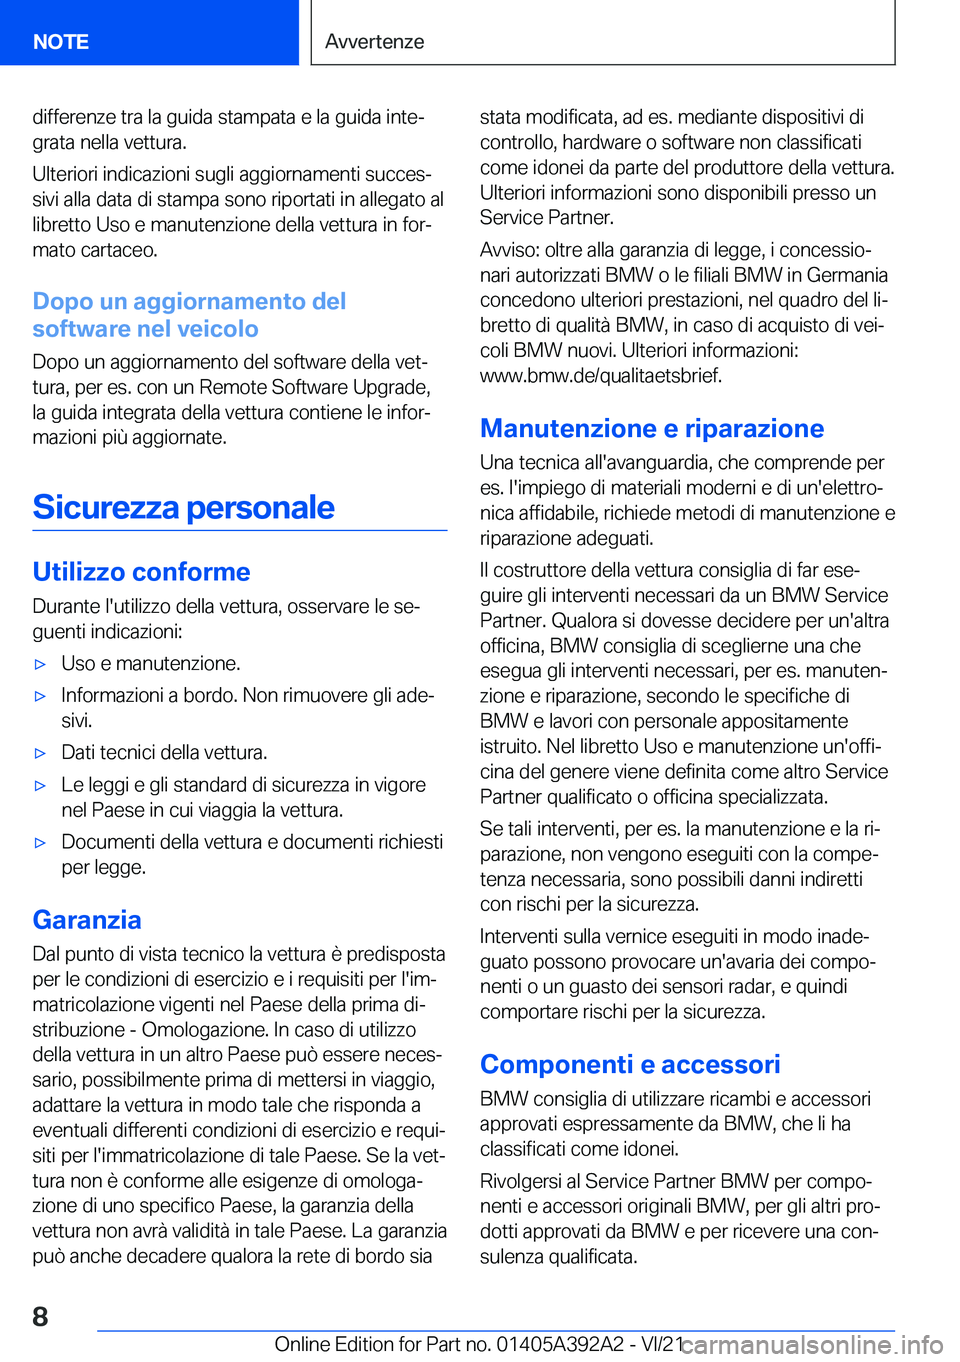 BMW 4 SERIES 2022  Libretti Di Uso E manutenzione (in Italian) �d�i�f�f�e�r�e�n�z�e��t�r�a��l�a��g�u�i�d�a��s�t�a�m�p�a�t�a��e��l�a��g�u�i�d�a��i�n�t�eª�g�r�a�t�a��n�e�l�l�a��v�e�t�t�u�r�a�.
�U�l�t�e�r�i�o�r�i��i�n�d�i�c�a�z�i�o�n�i��s�u�g�l�i��a�g